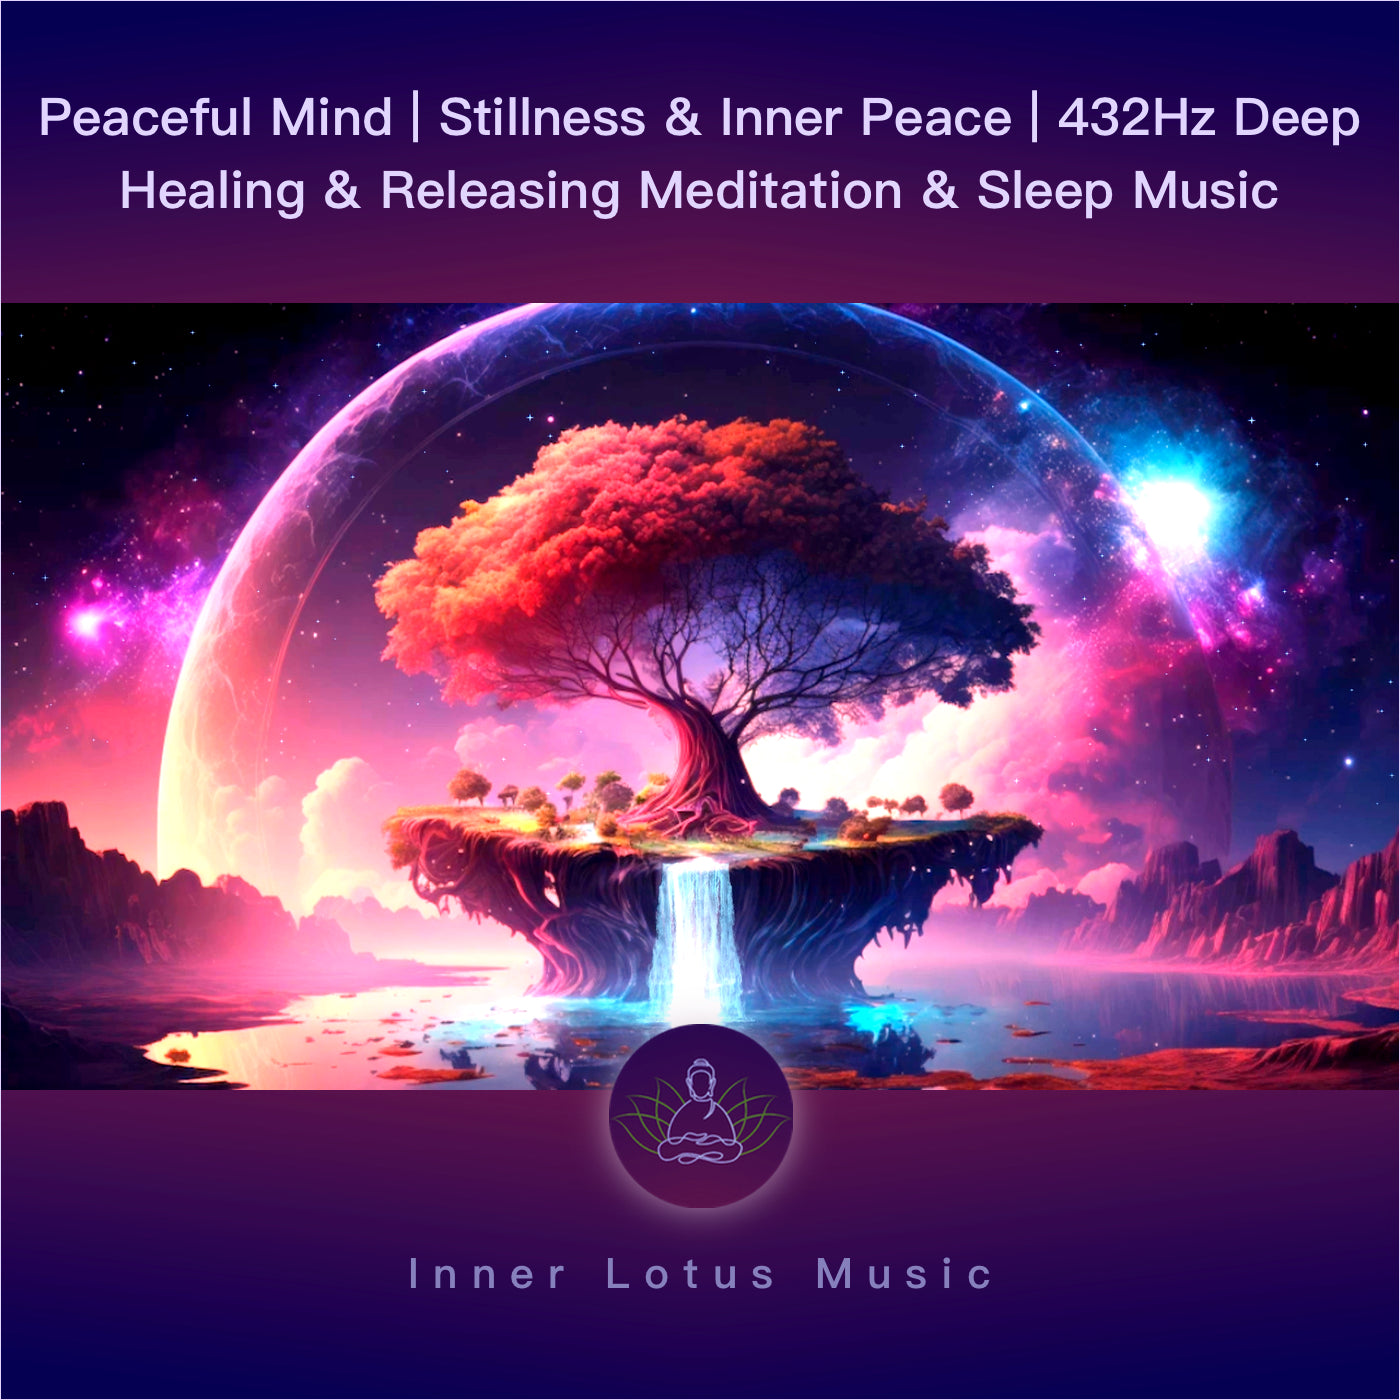 Paz Mental | Calma y Silencio Interior | Música 432Hz Frecuencia para Relajación, Meditación y Sueño